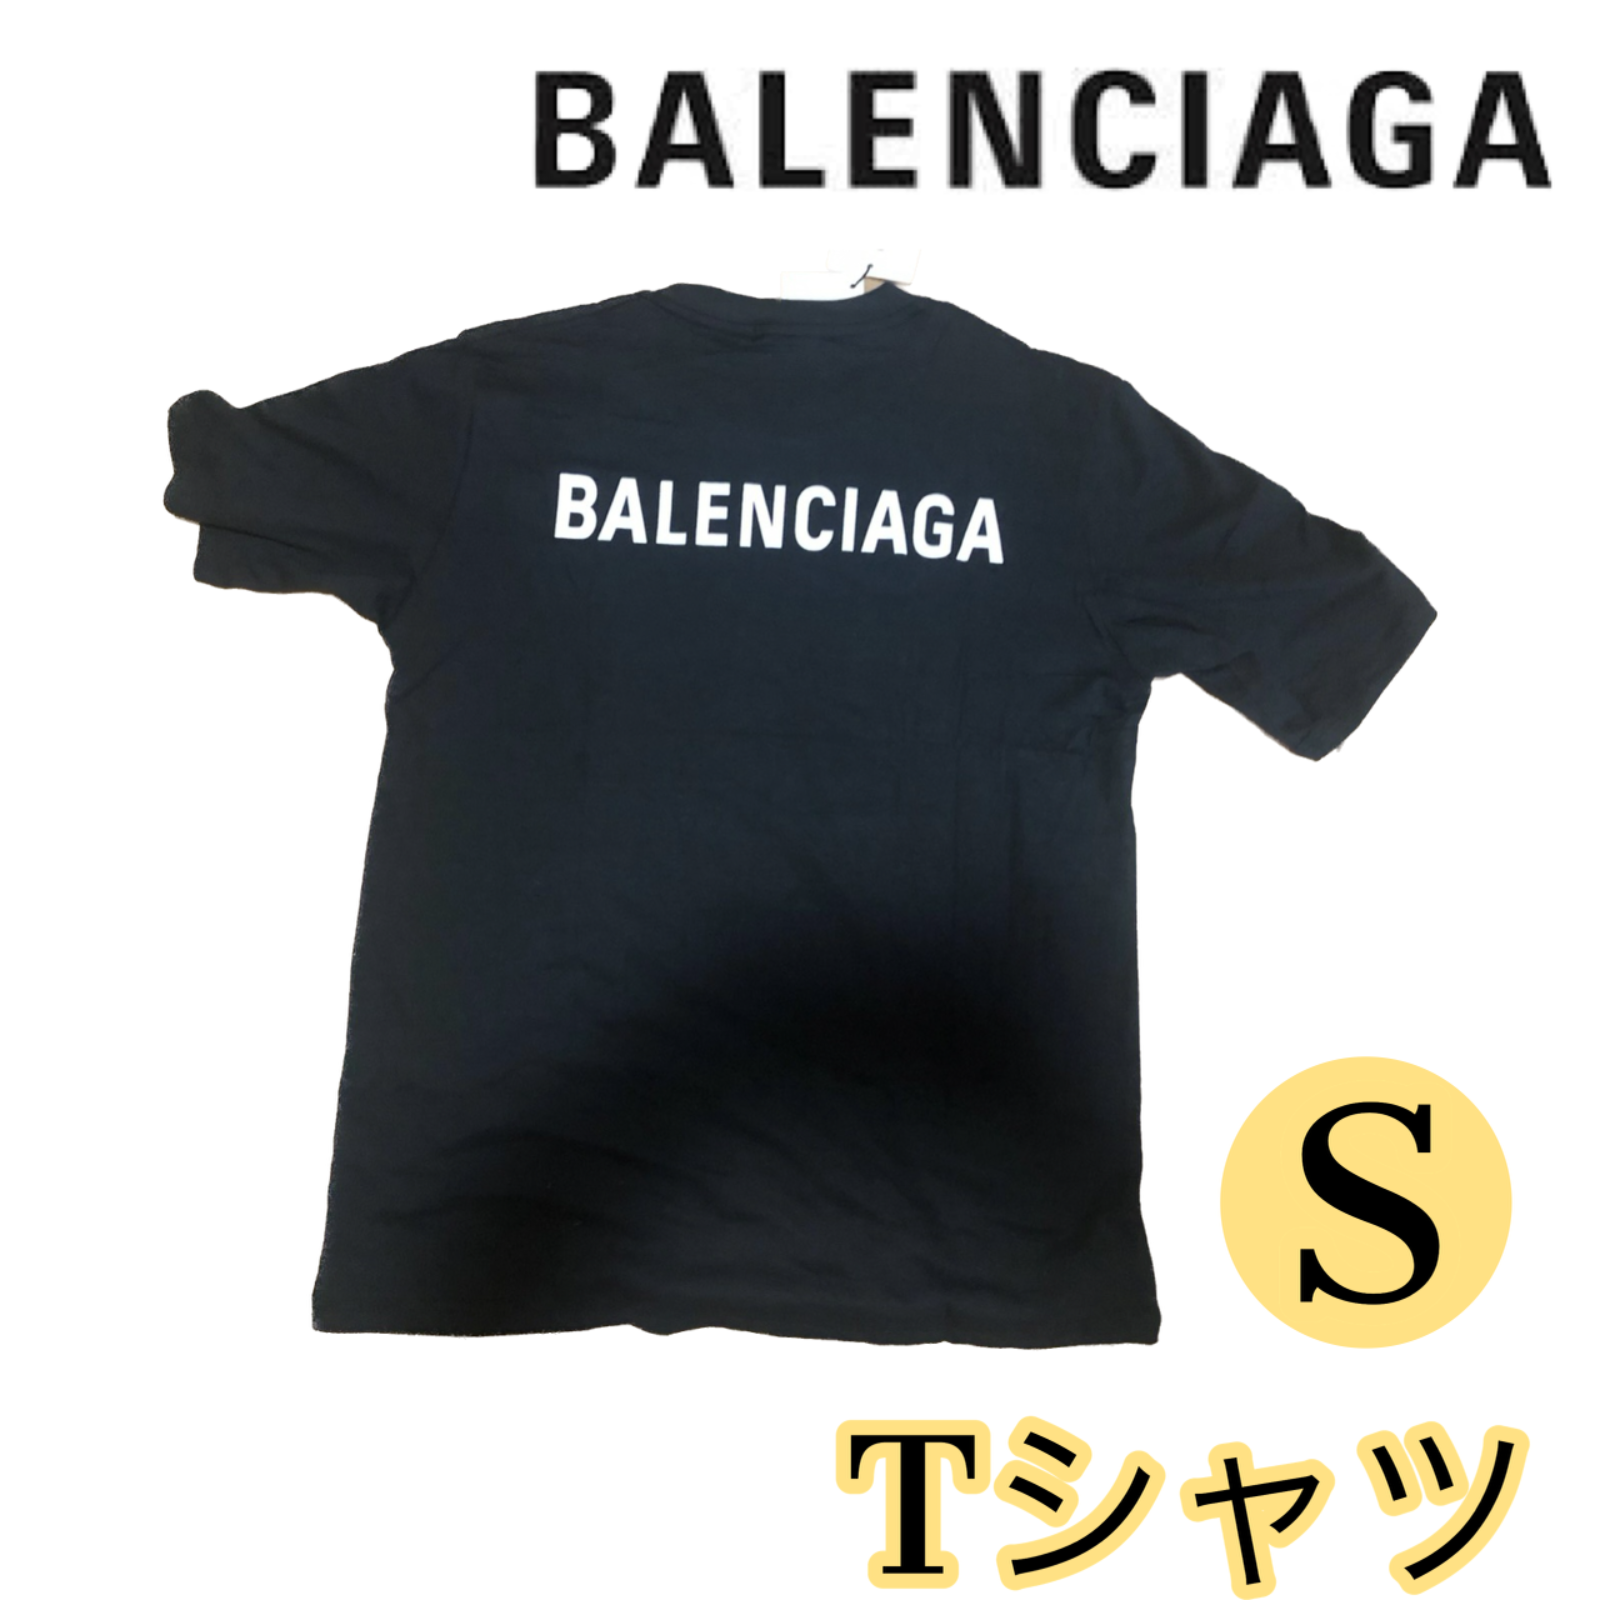 バレンシアガ 半袖カットソー ロゴプリント 黒 S - Tシャツ/カットソー